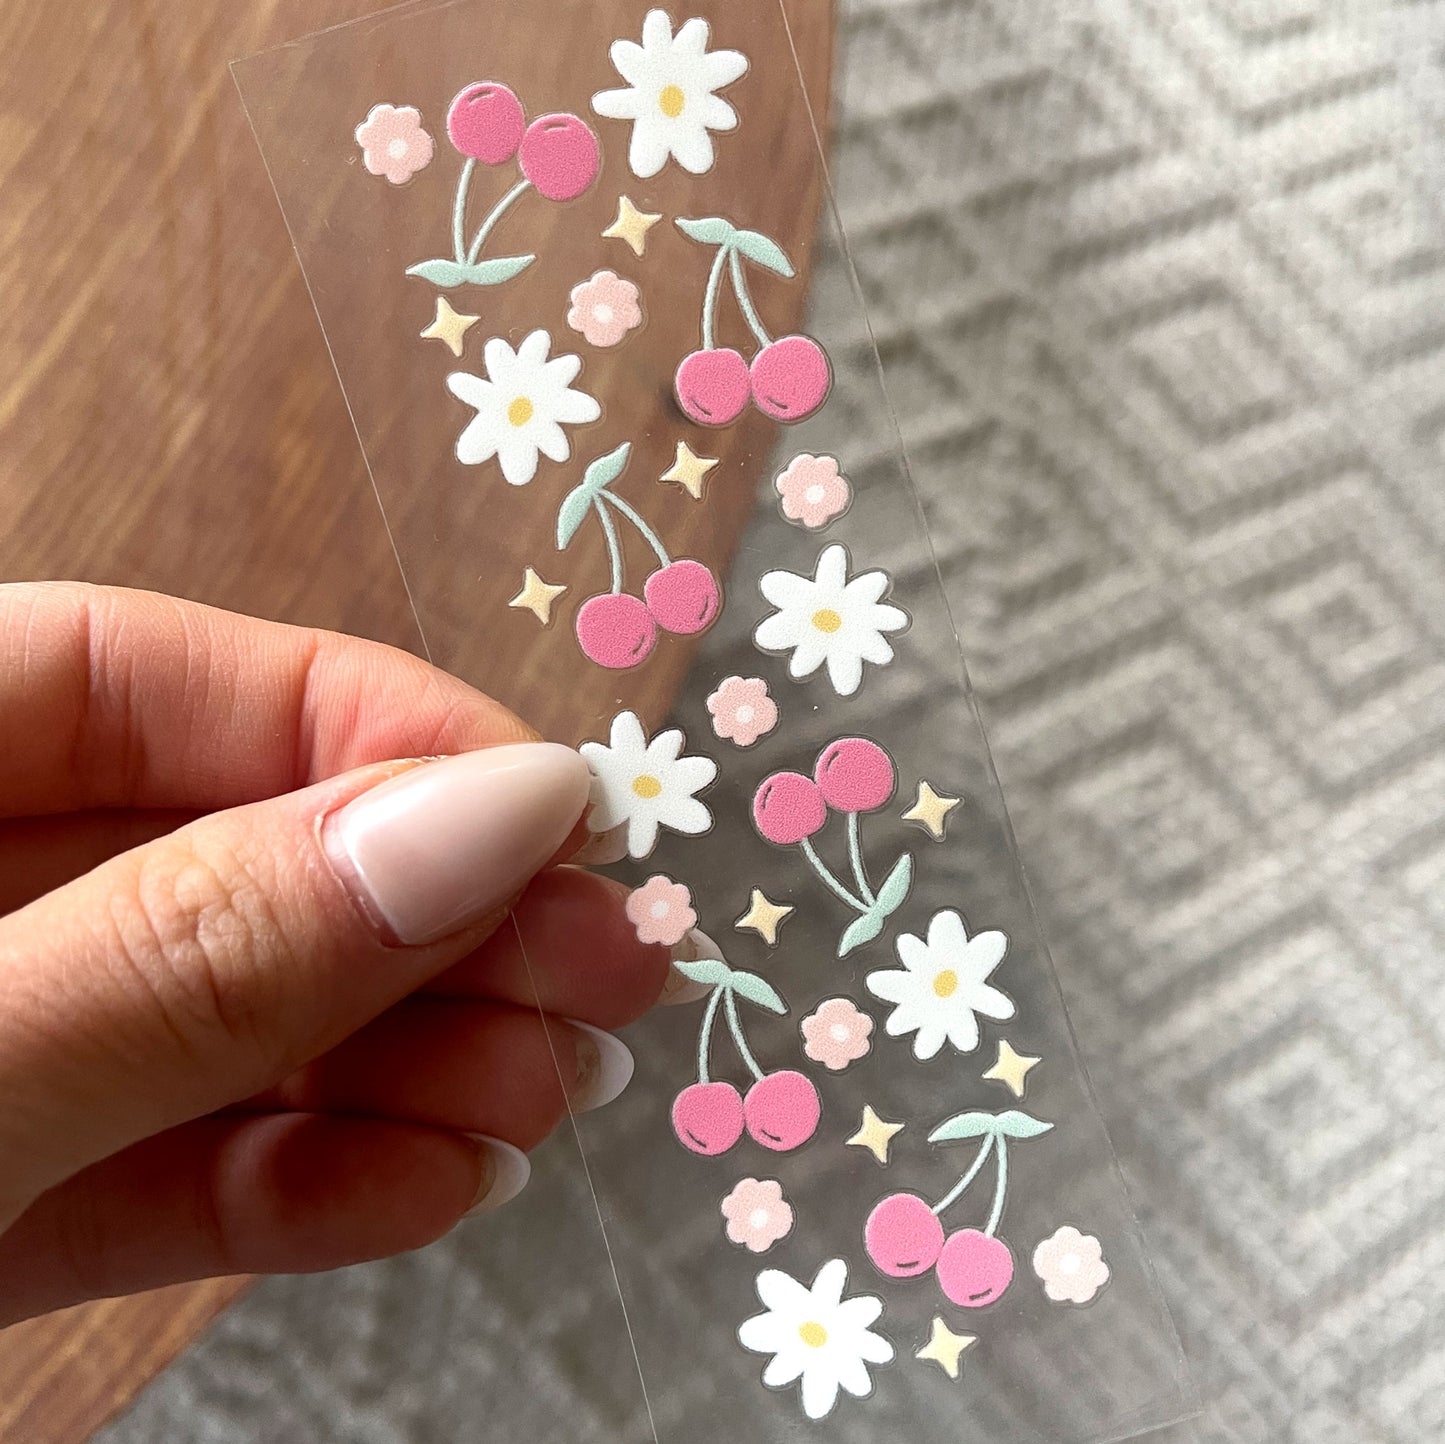 Pen UV DTF Wrap | Floral Cherry